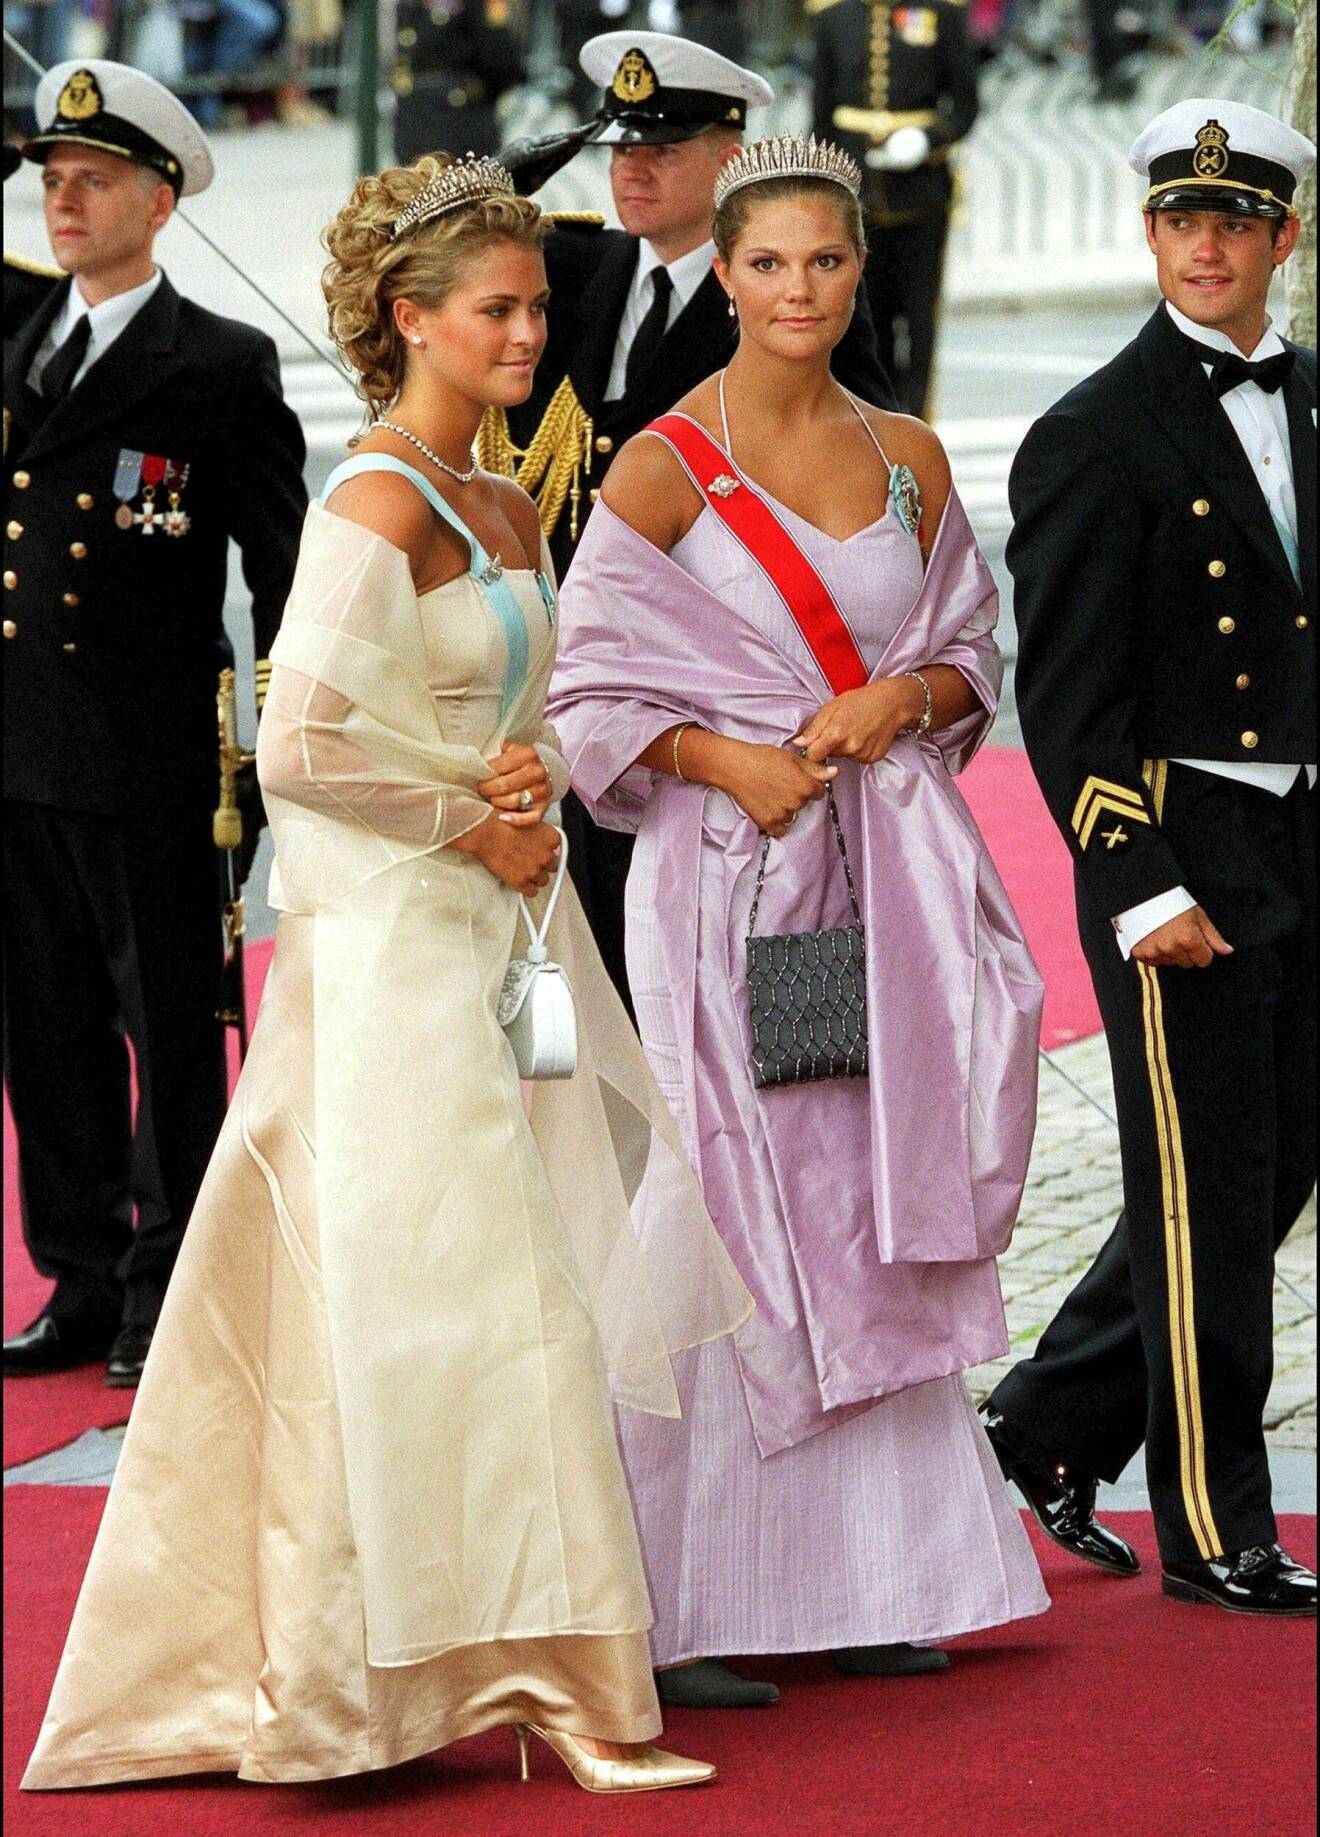 Prinsessan Madeleine, kronprinsessan Victoria och prins Carl Philip på Mette-Marits bröllop 2001